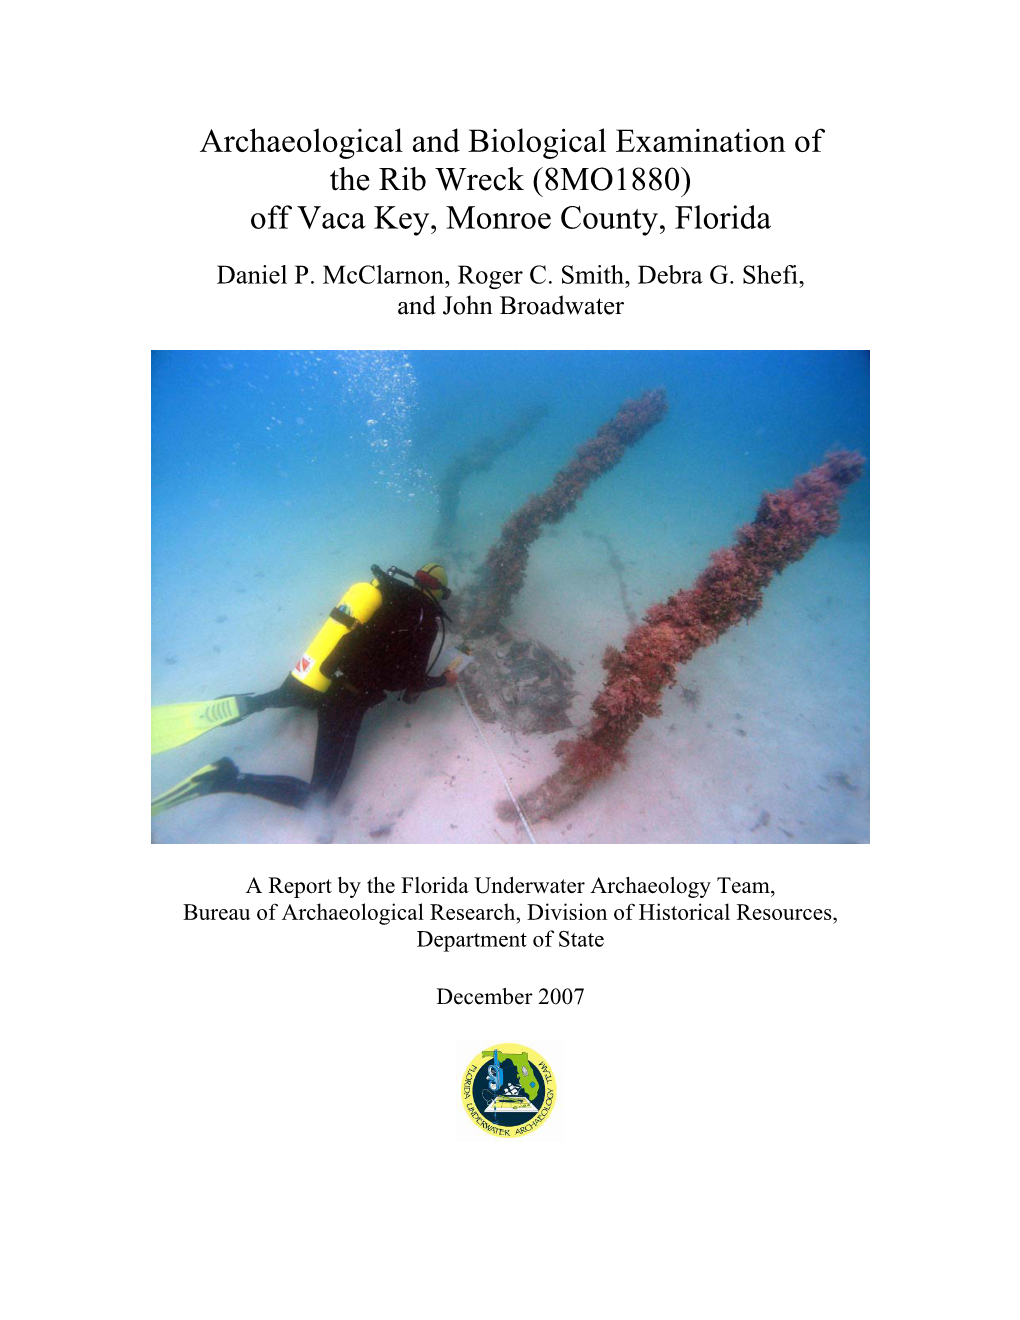 Rib Wreck (8MO1880) Off Vaca Key, Monroe County, Florida